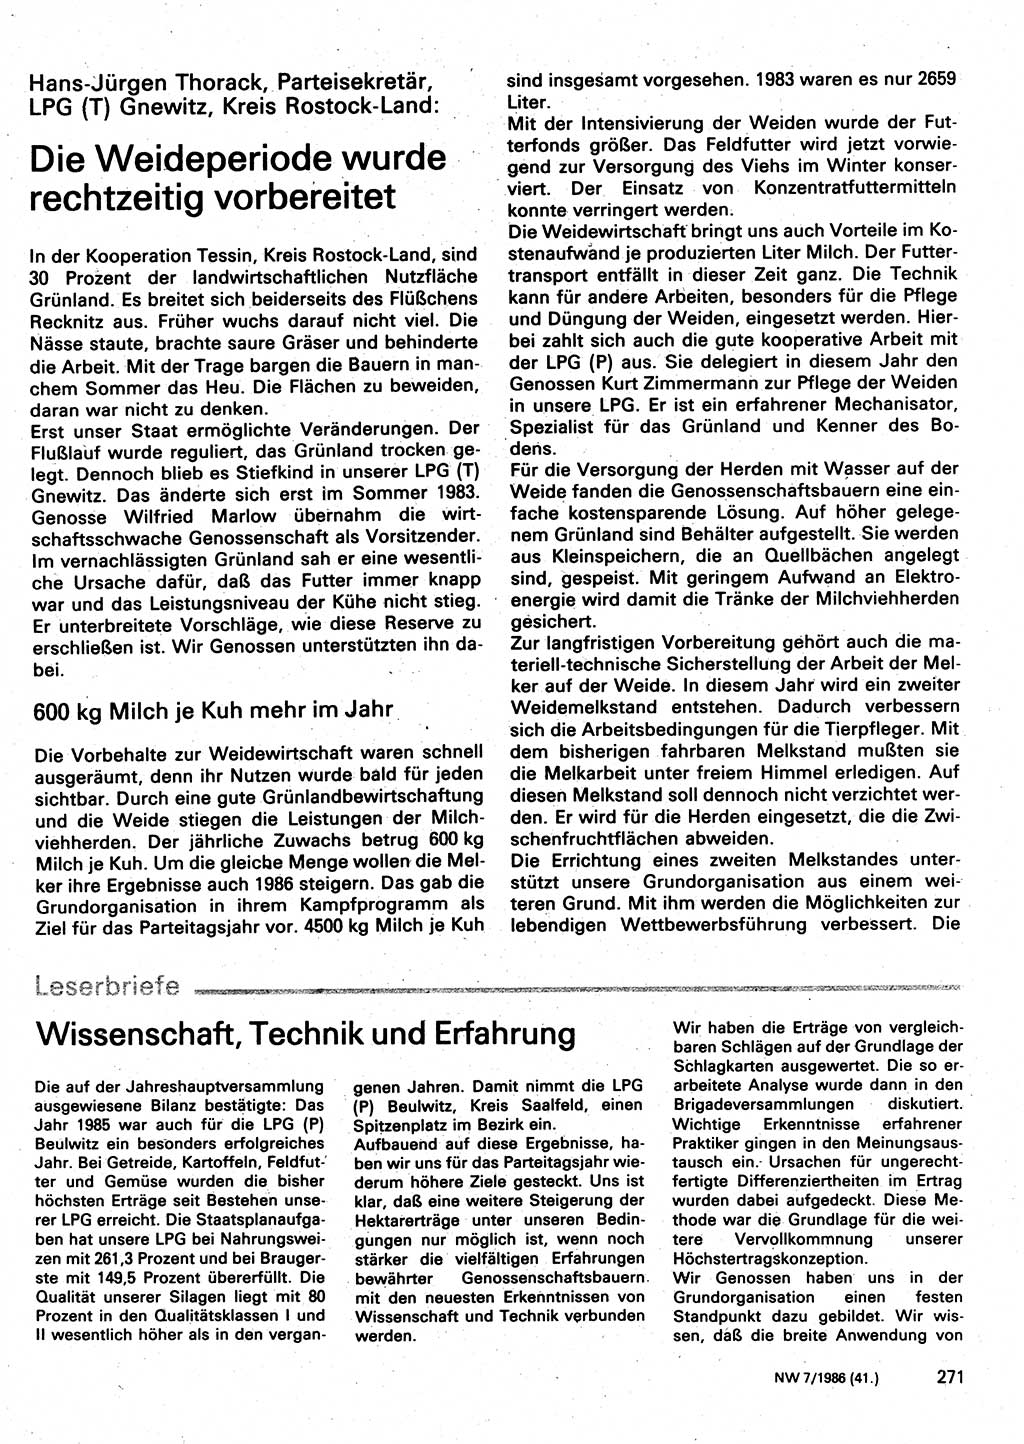 Neuer Weg (NW), Organ des Zentralkomitees (ZK) der SED (Sozialistische Einheitspartei Deutschlands) für Fragen des Parteilebens, 41. Jahrgang [Deutsche Demokratische Republik (DDR)] 1986, Seite 271 (NW ZK SED DDR 1986, S. 271)